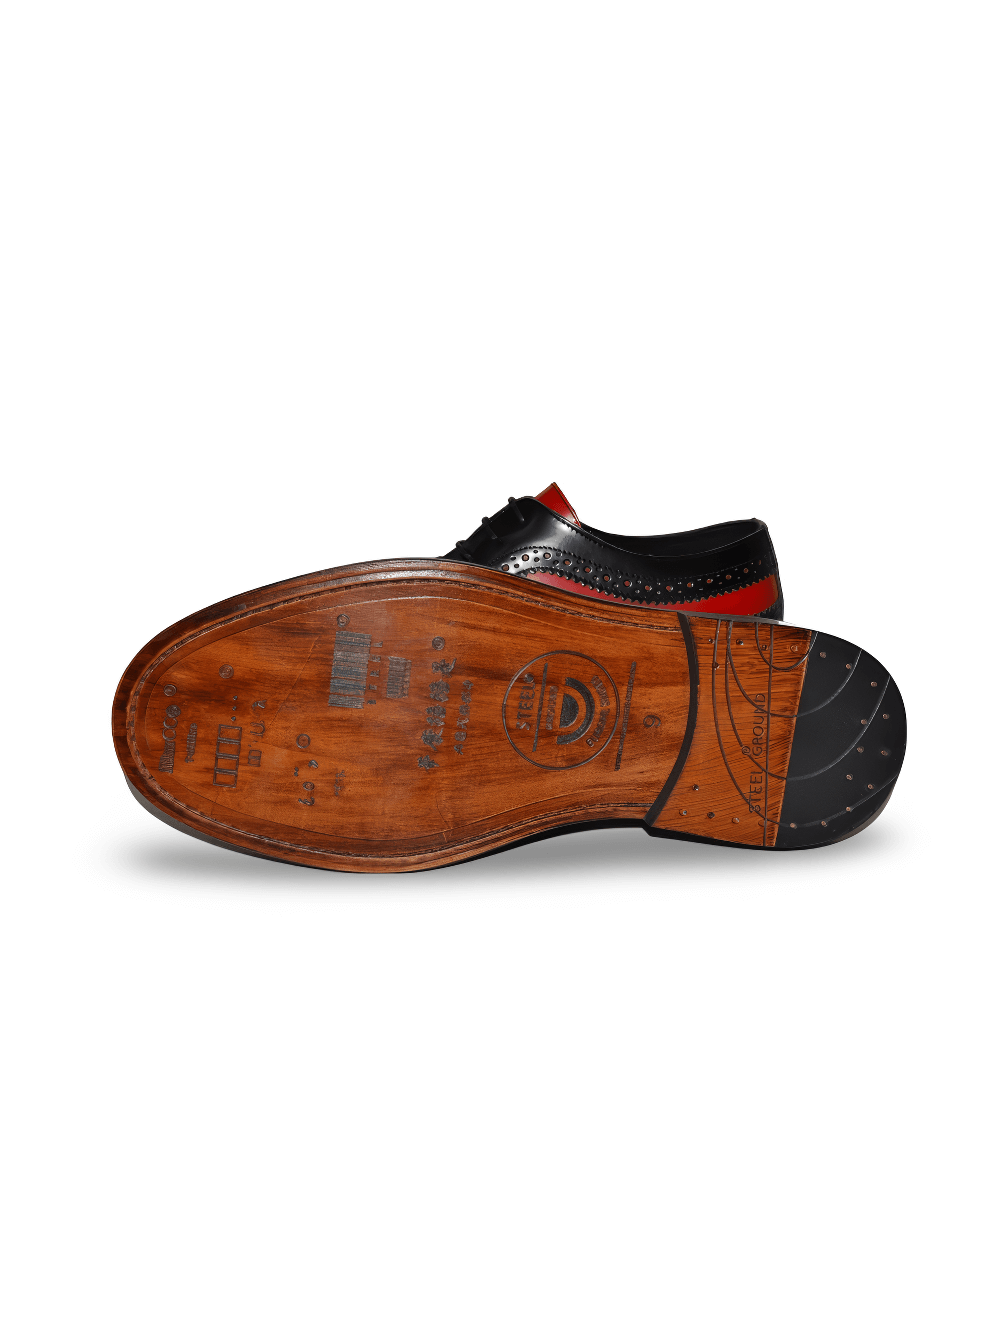 Chaussures Derby à lacets noires et rouges de style Rockabilly pour hommes